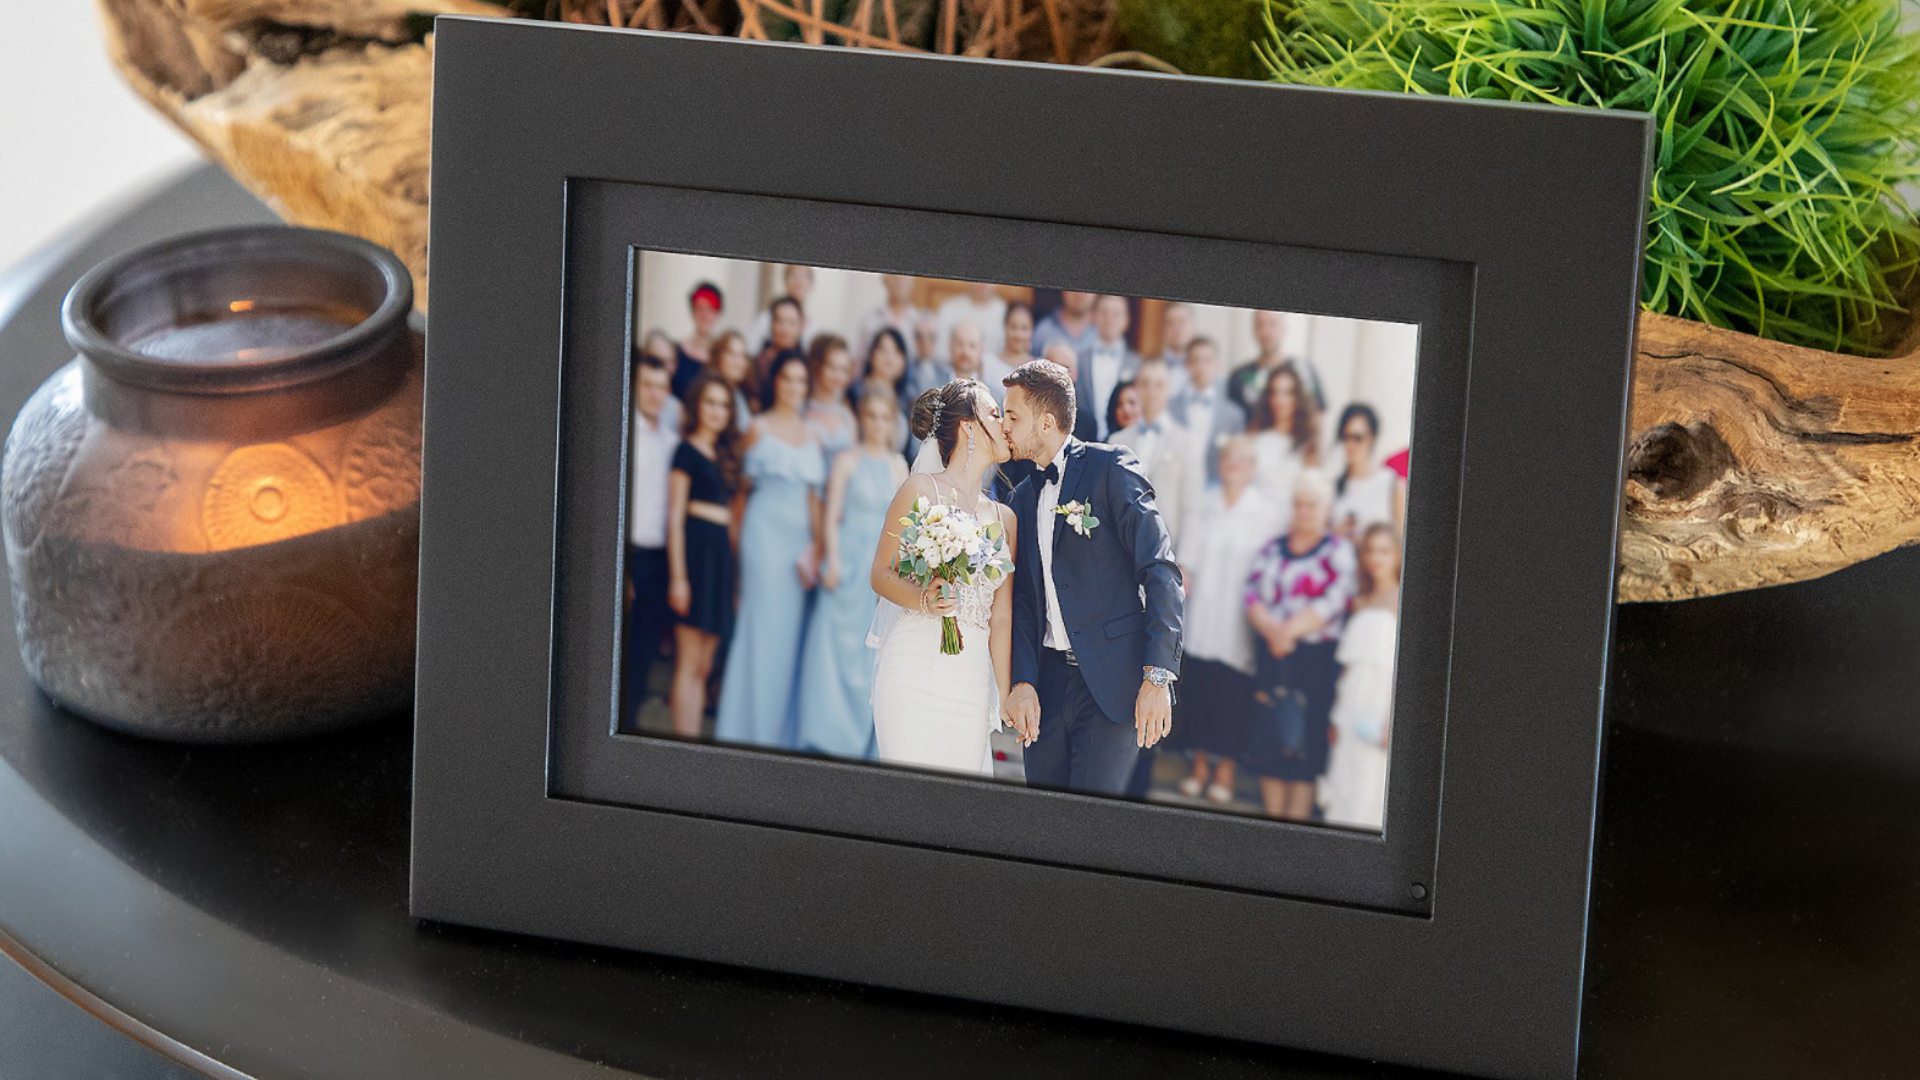 A digital photo frame displays a wedding day photo.